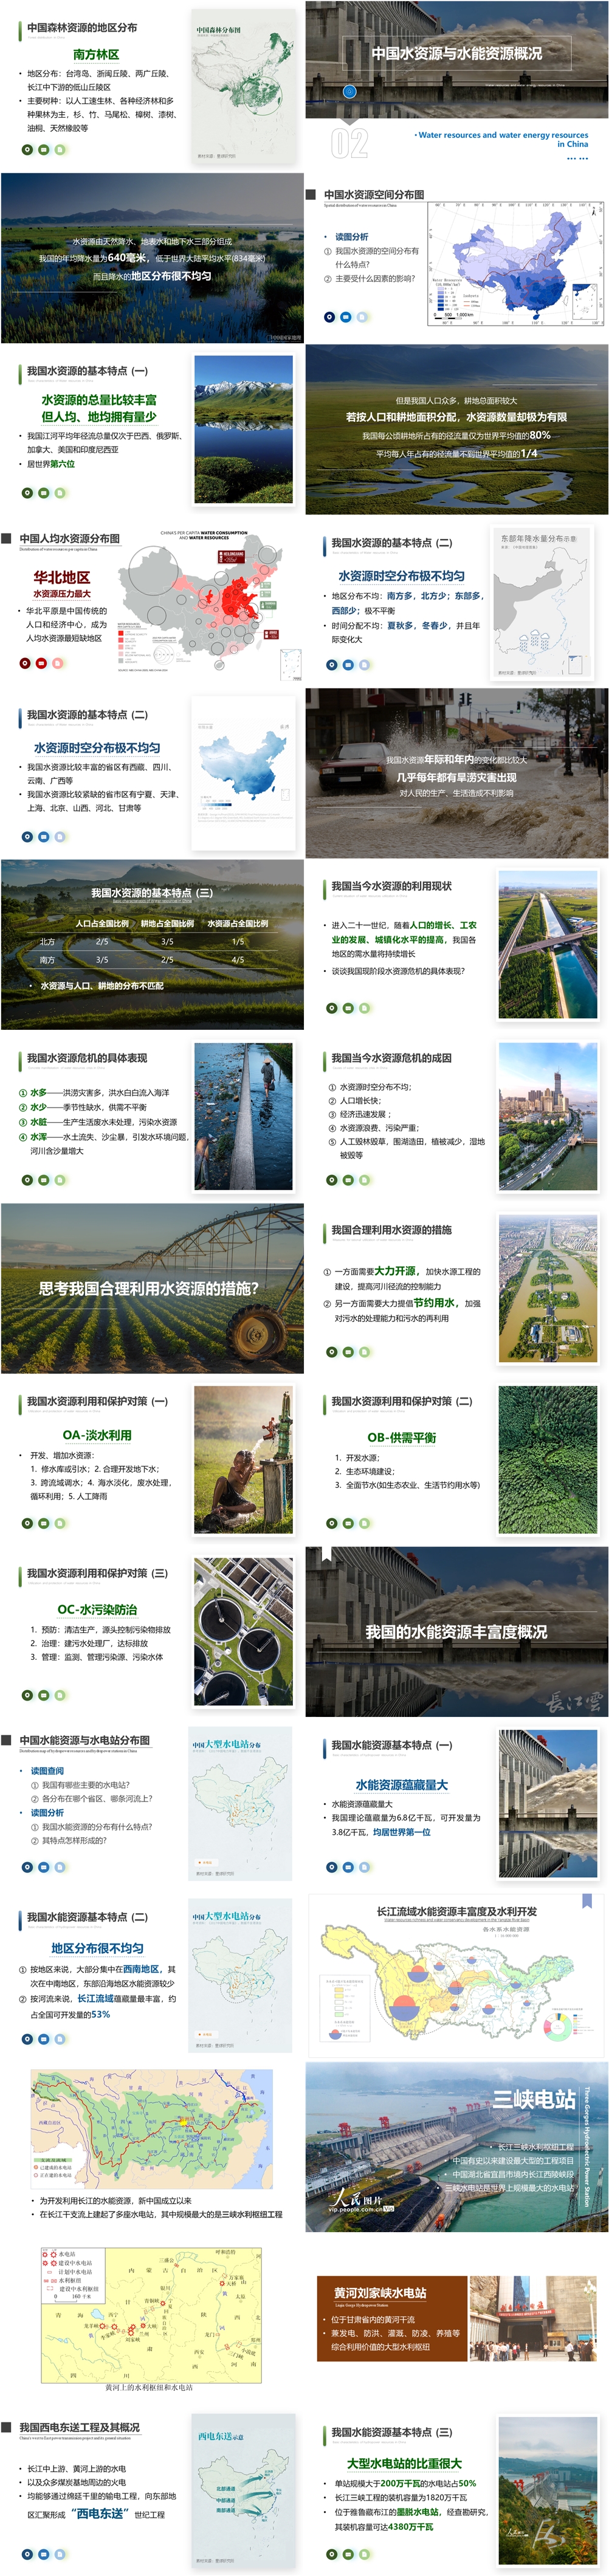 第06讲 中国的自然资源 [2020版]-02.jpg